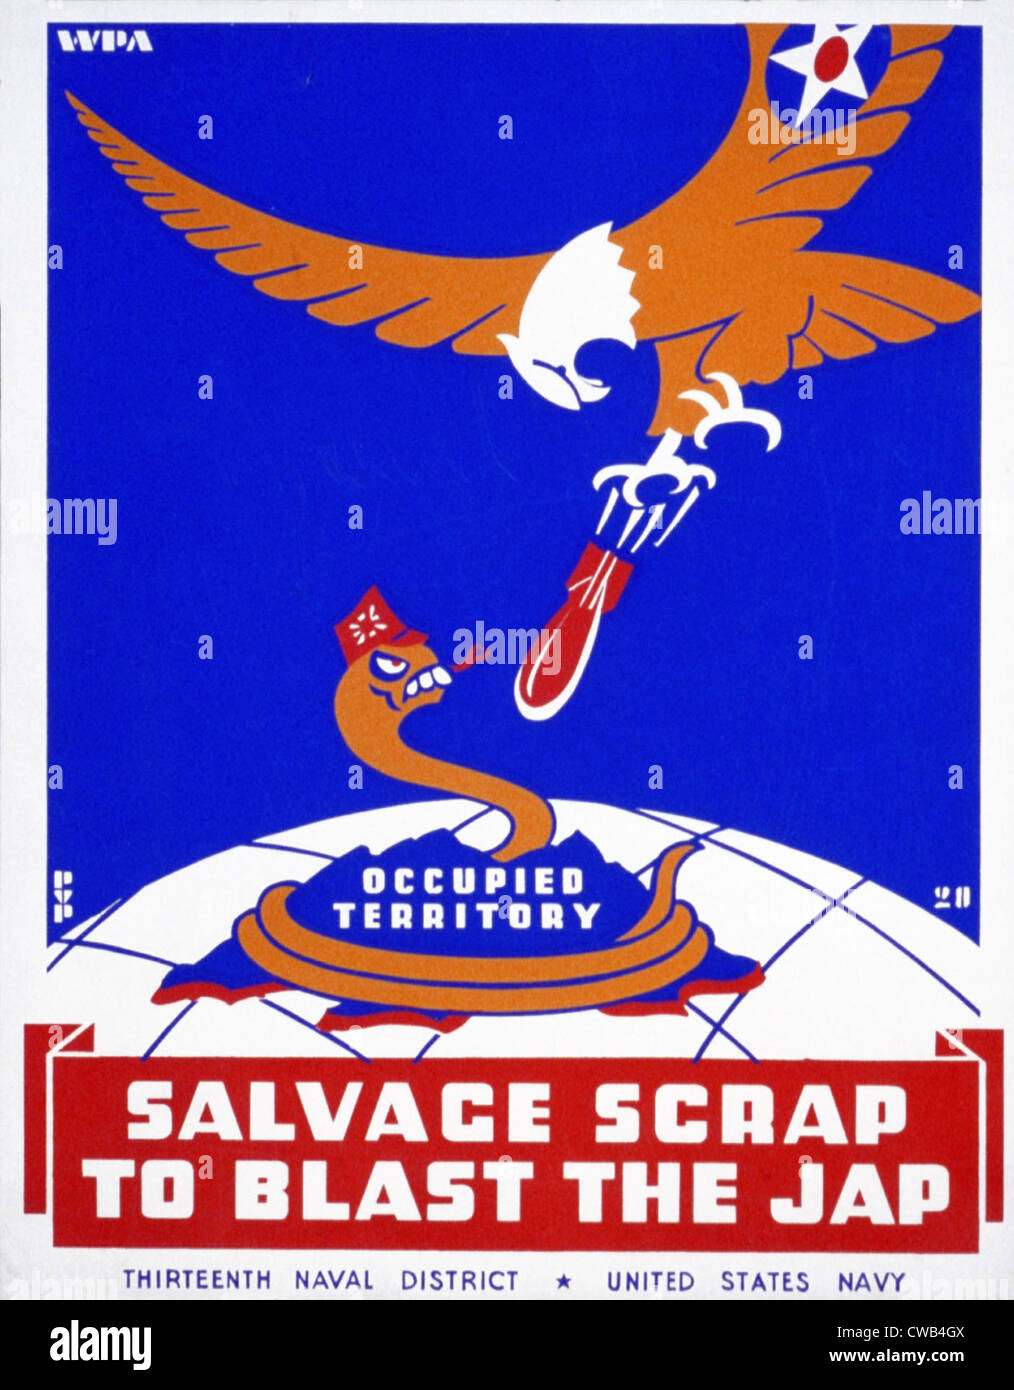 La Seconde Guerre mondiale, pour l'affiche de la treizième district naval, United States Navy, montrant un serpent représentant le Japon bombardé par un Banque D'Images